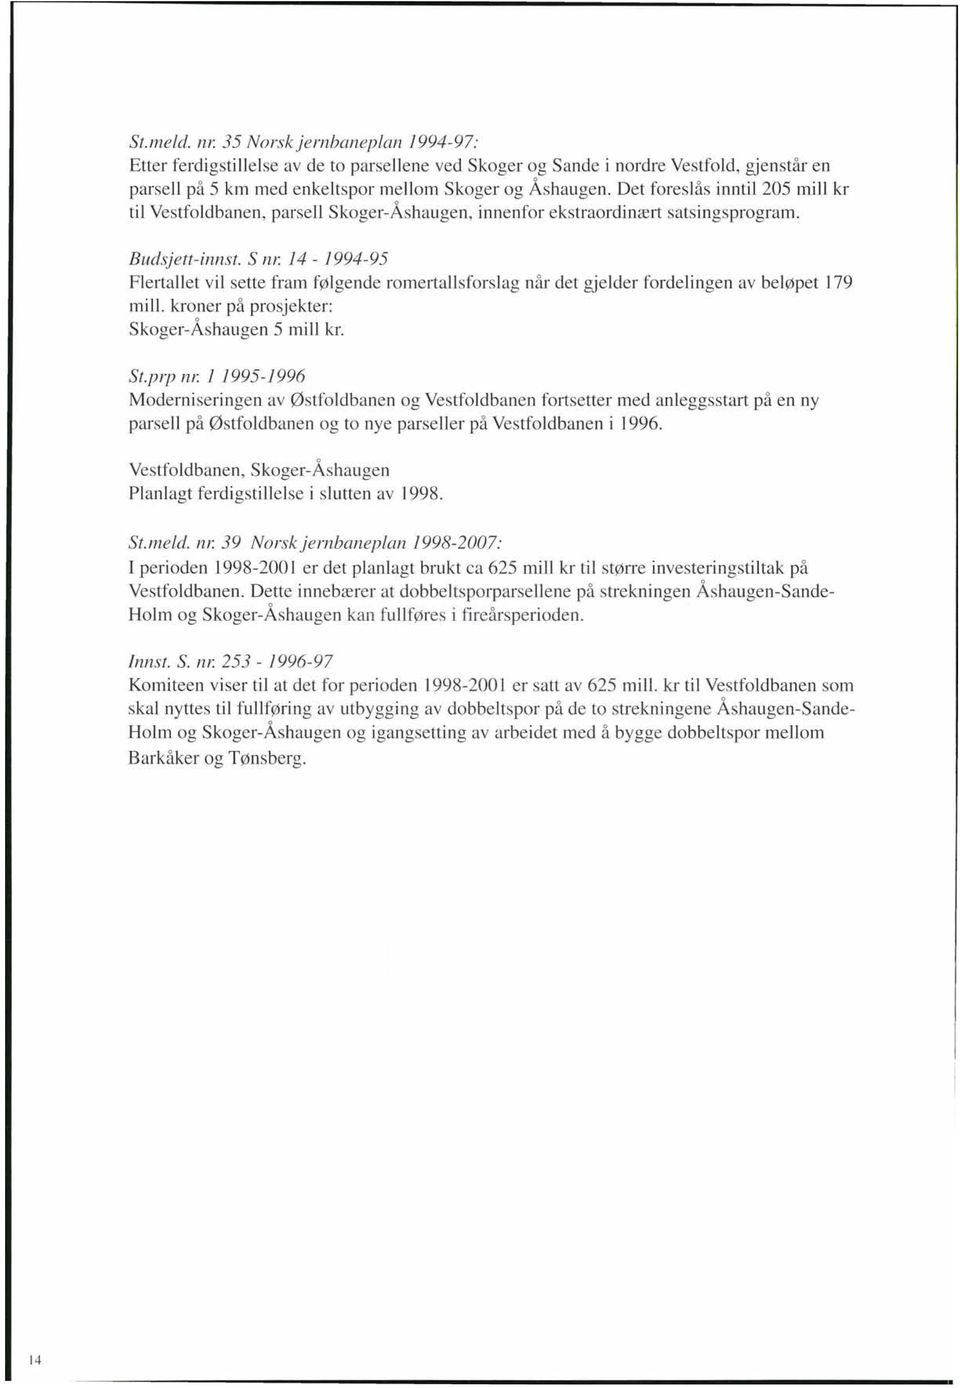 14-1994-95 Flertallet vil sette fram følgende romertallsforslag når det gjelder fordelingen av beløpet 179 mill. kroner på prosjekter: Skoger-Åshaugen 5 mill kr. St.prp nr.